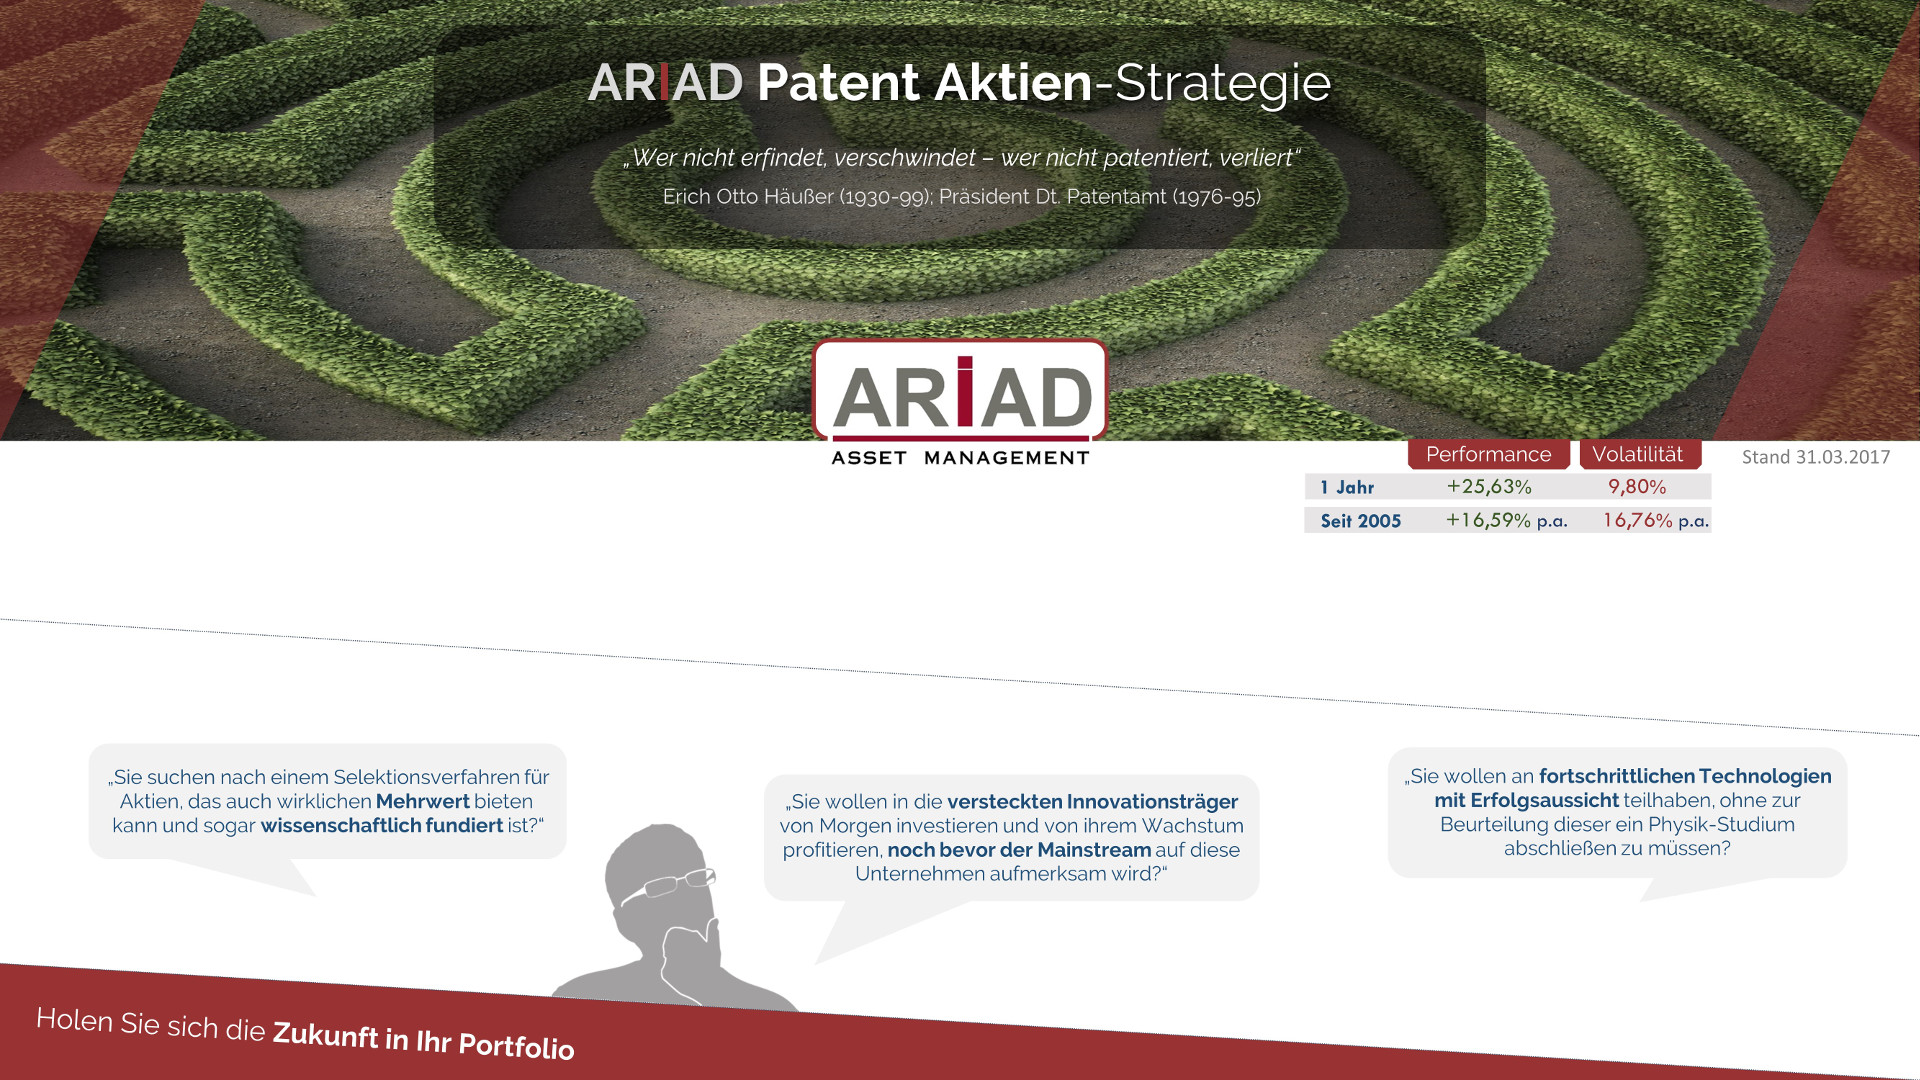 Patent Aktien Strategie Ariad Asset Management Gmbh